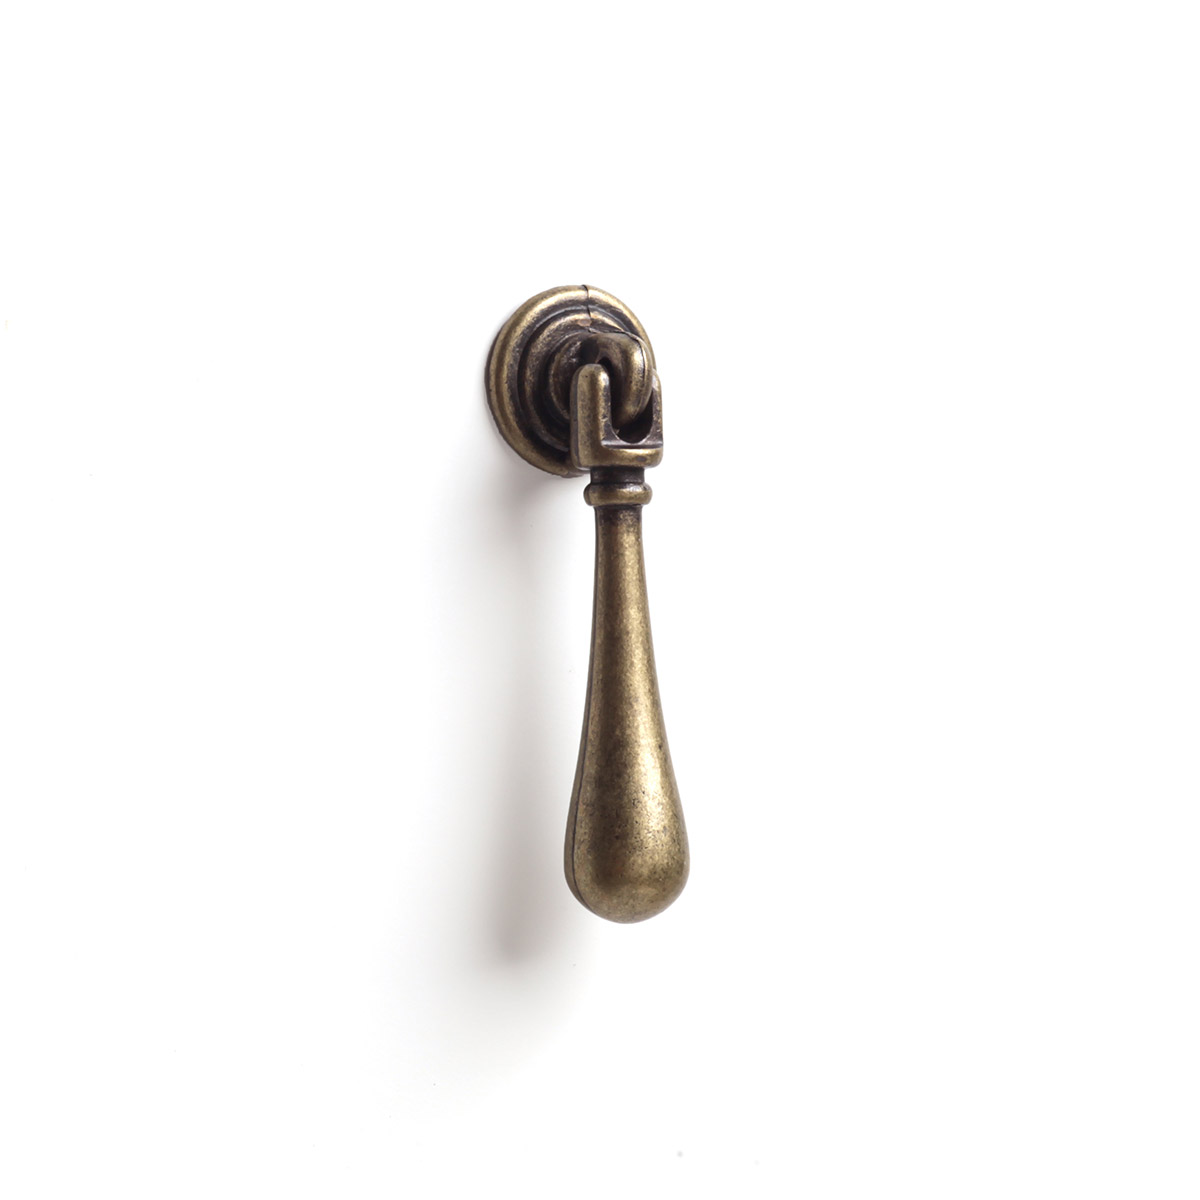 Pendule en zamak avec finition en cuir, dimensions: 13x65x15mm, inserts: 13mm